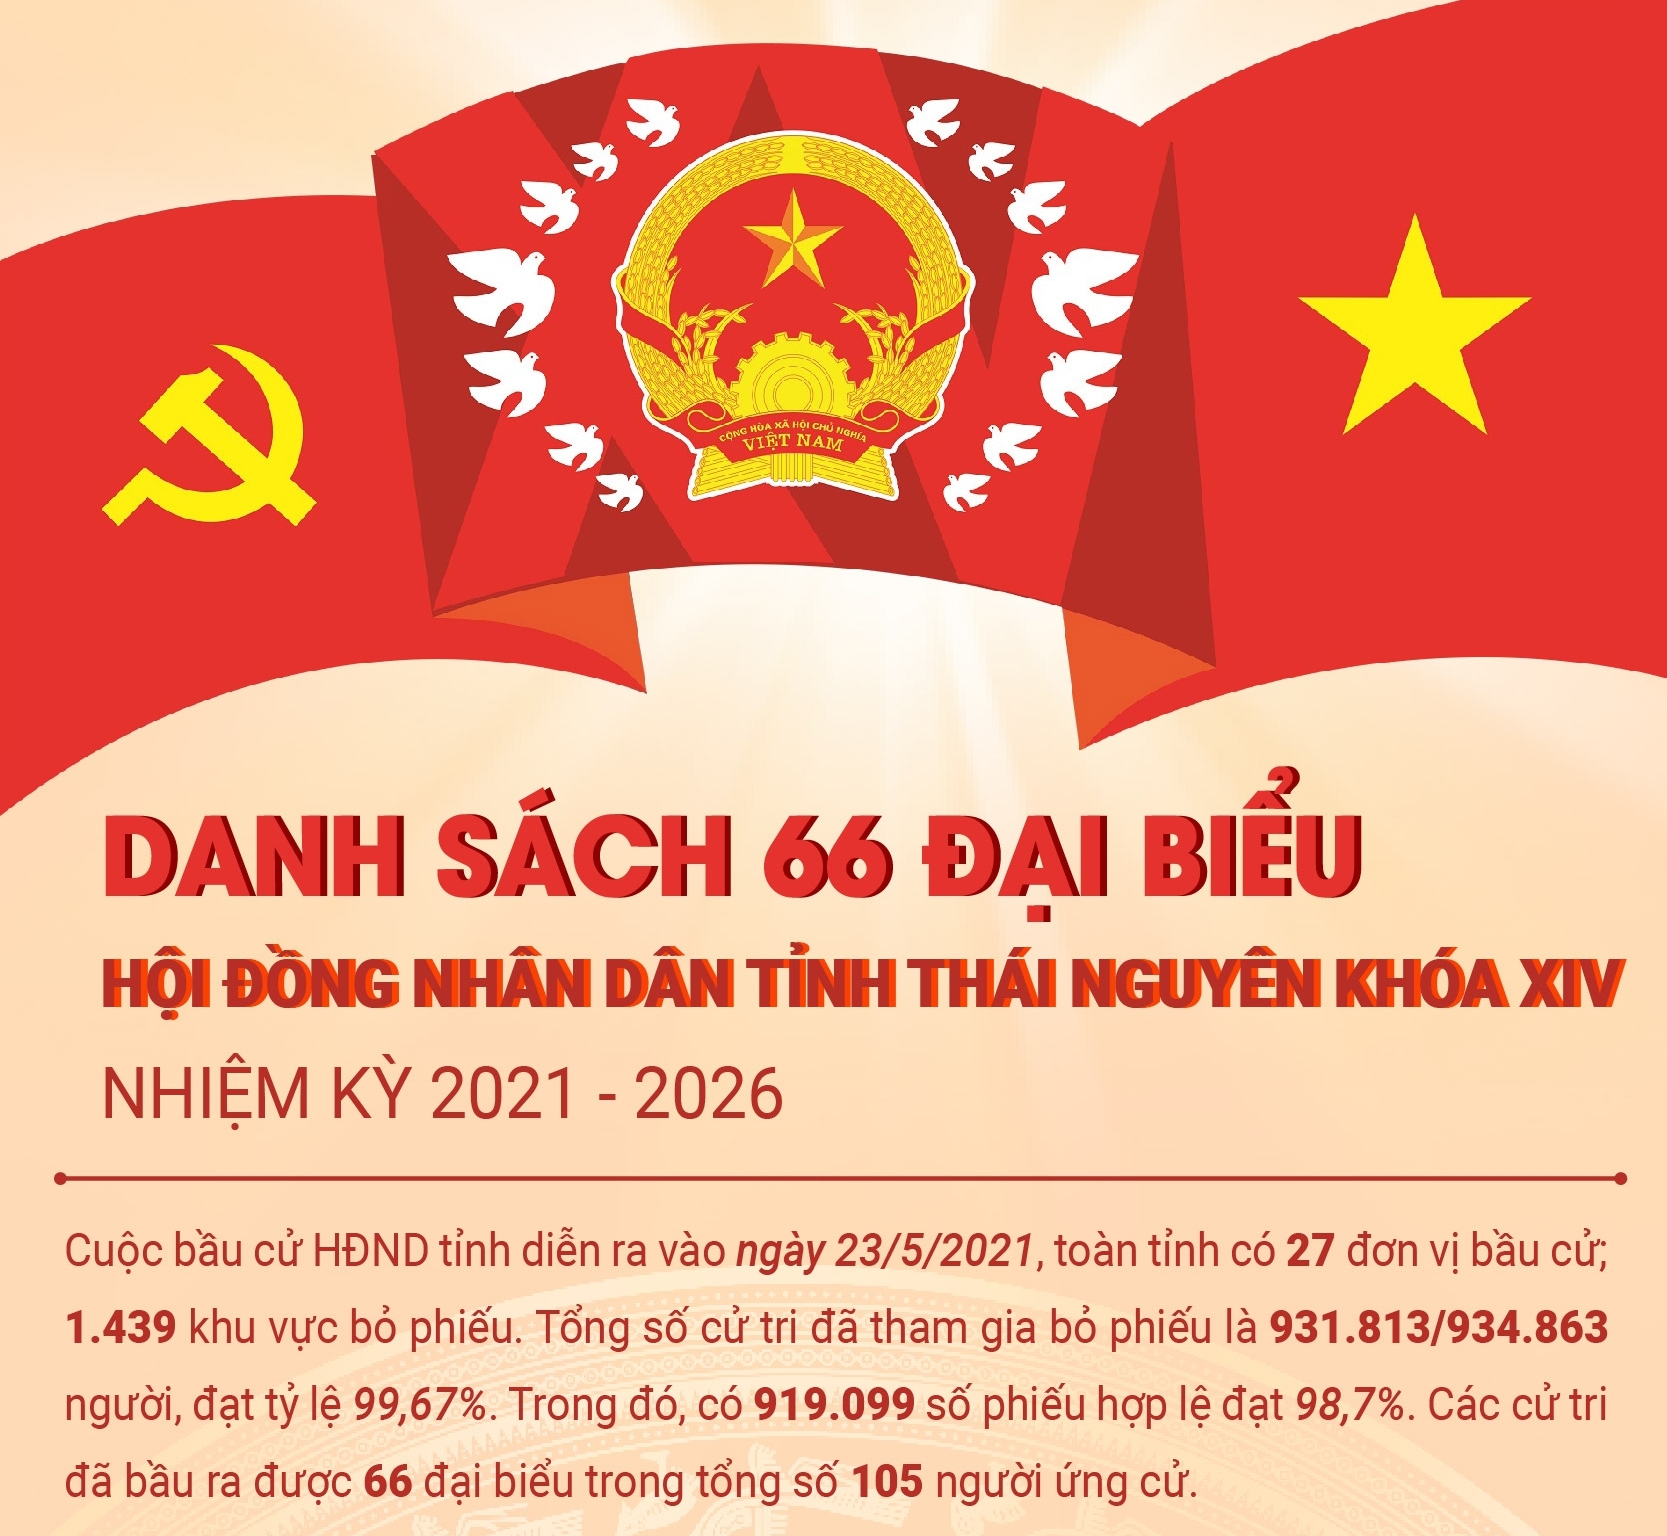 [Infographics]: Danh sách đại biểu Hội đồng nhân dân tỉnh Thái Nguyên khóa XIV, nhiệm kỳ 2021-2026